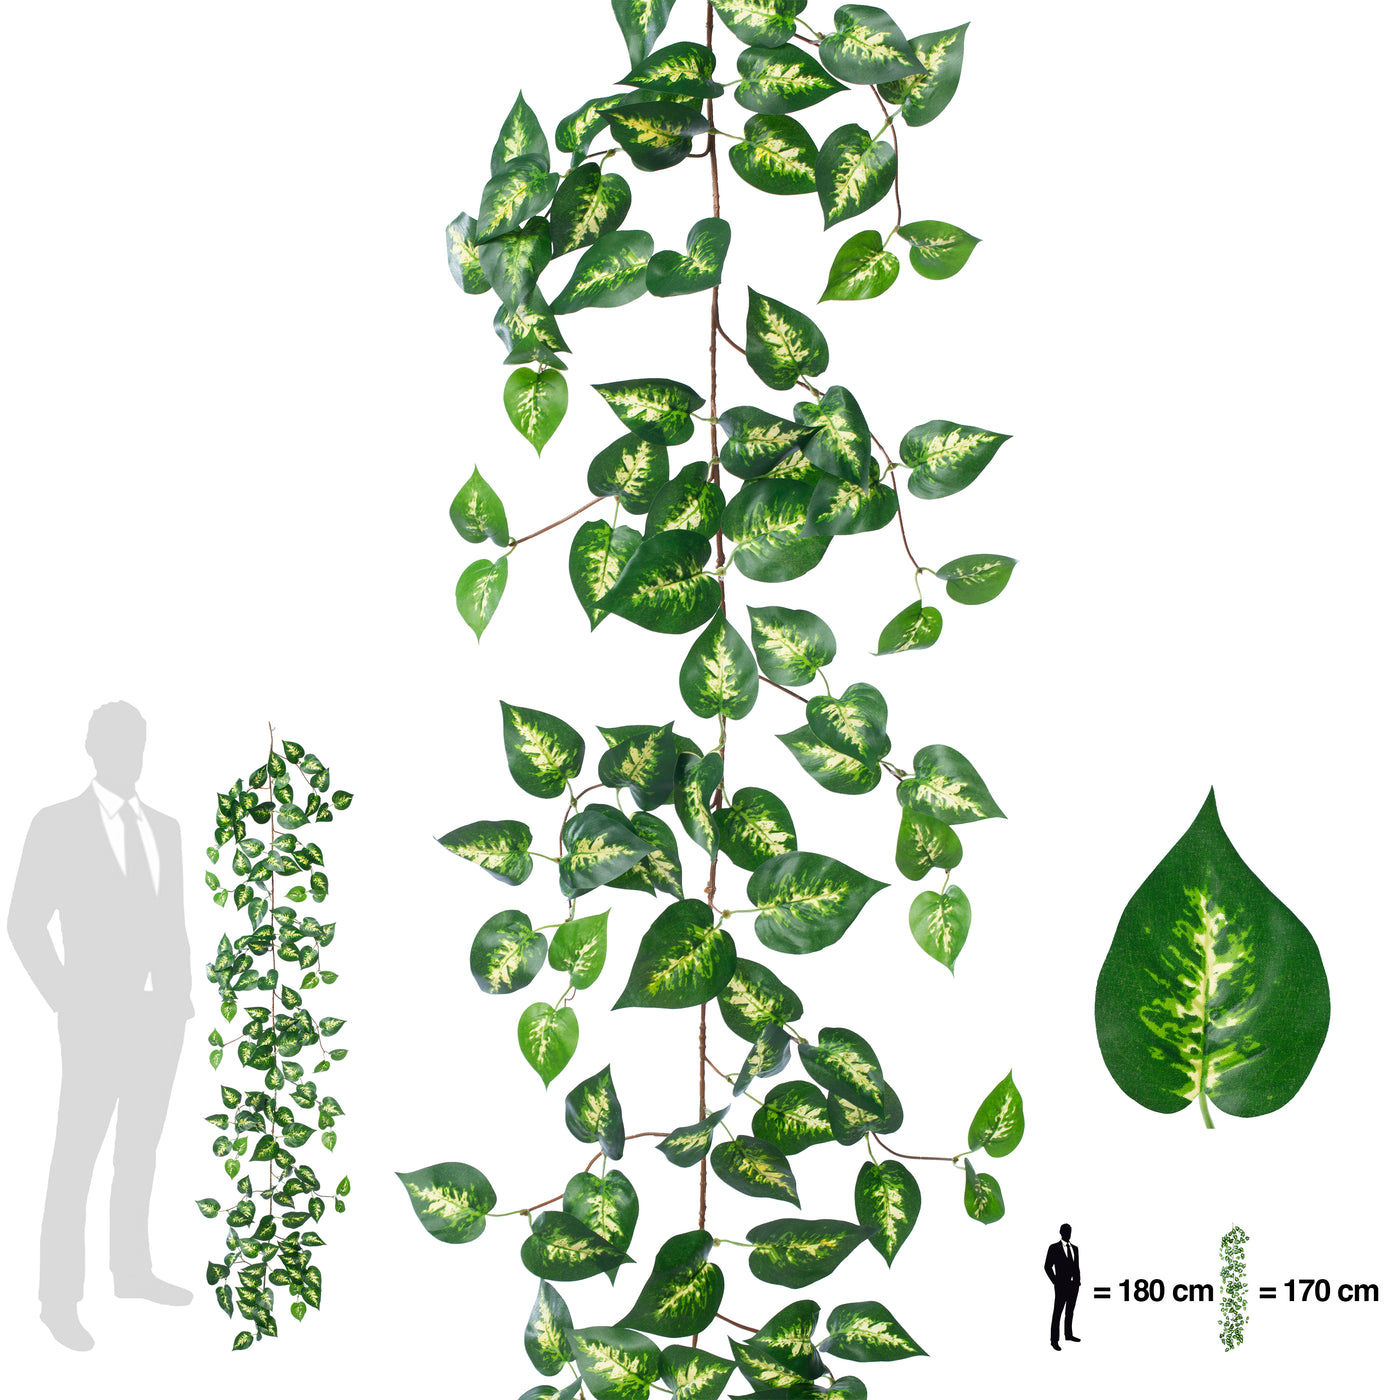 Ghirlanda artificiala pothos 170cm. 138 frunze. verde/galben in mijloc